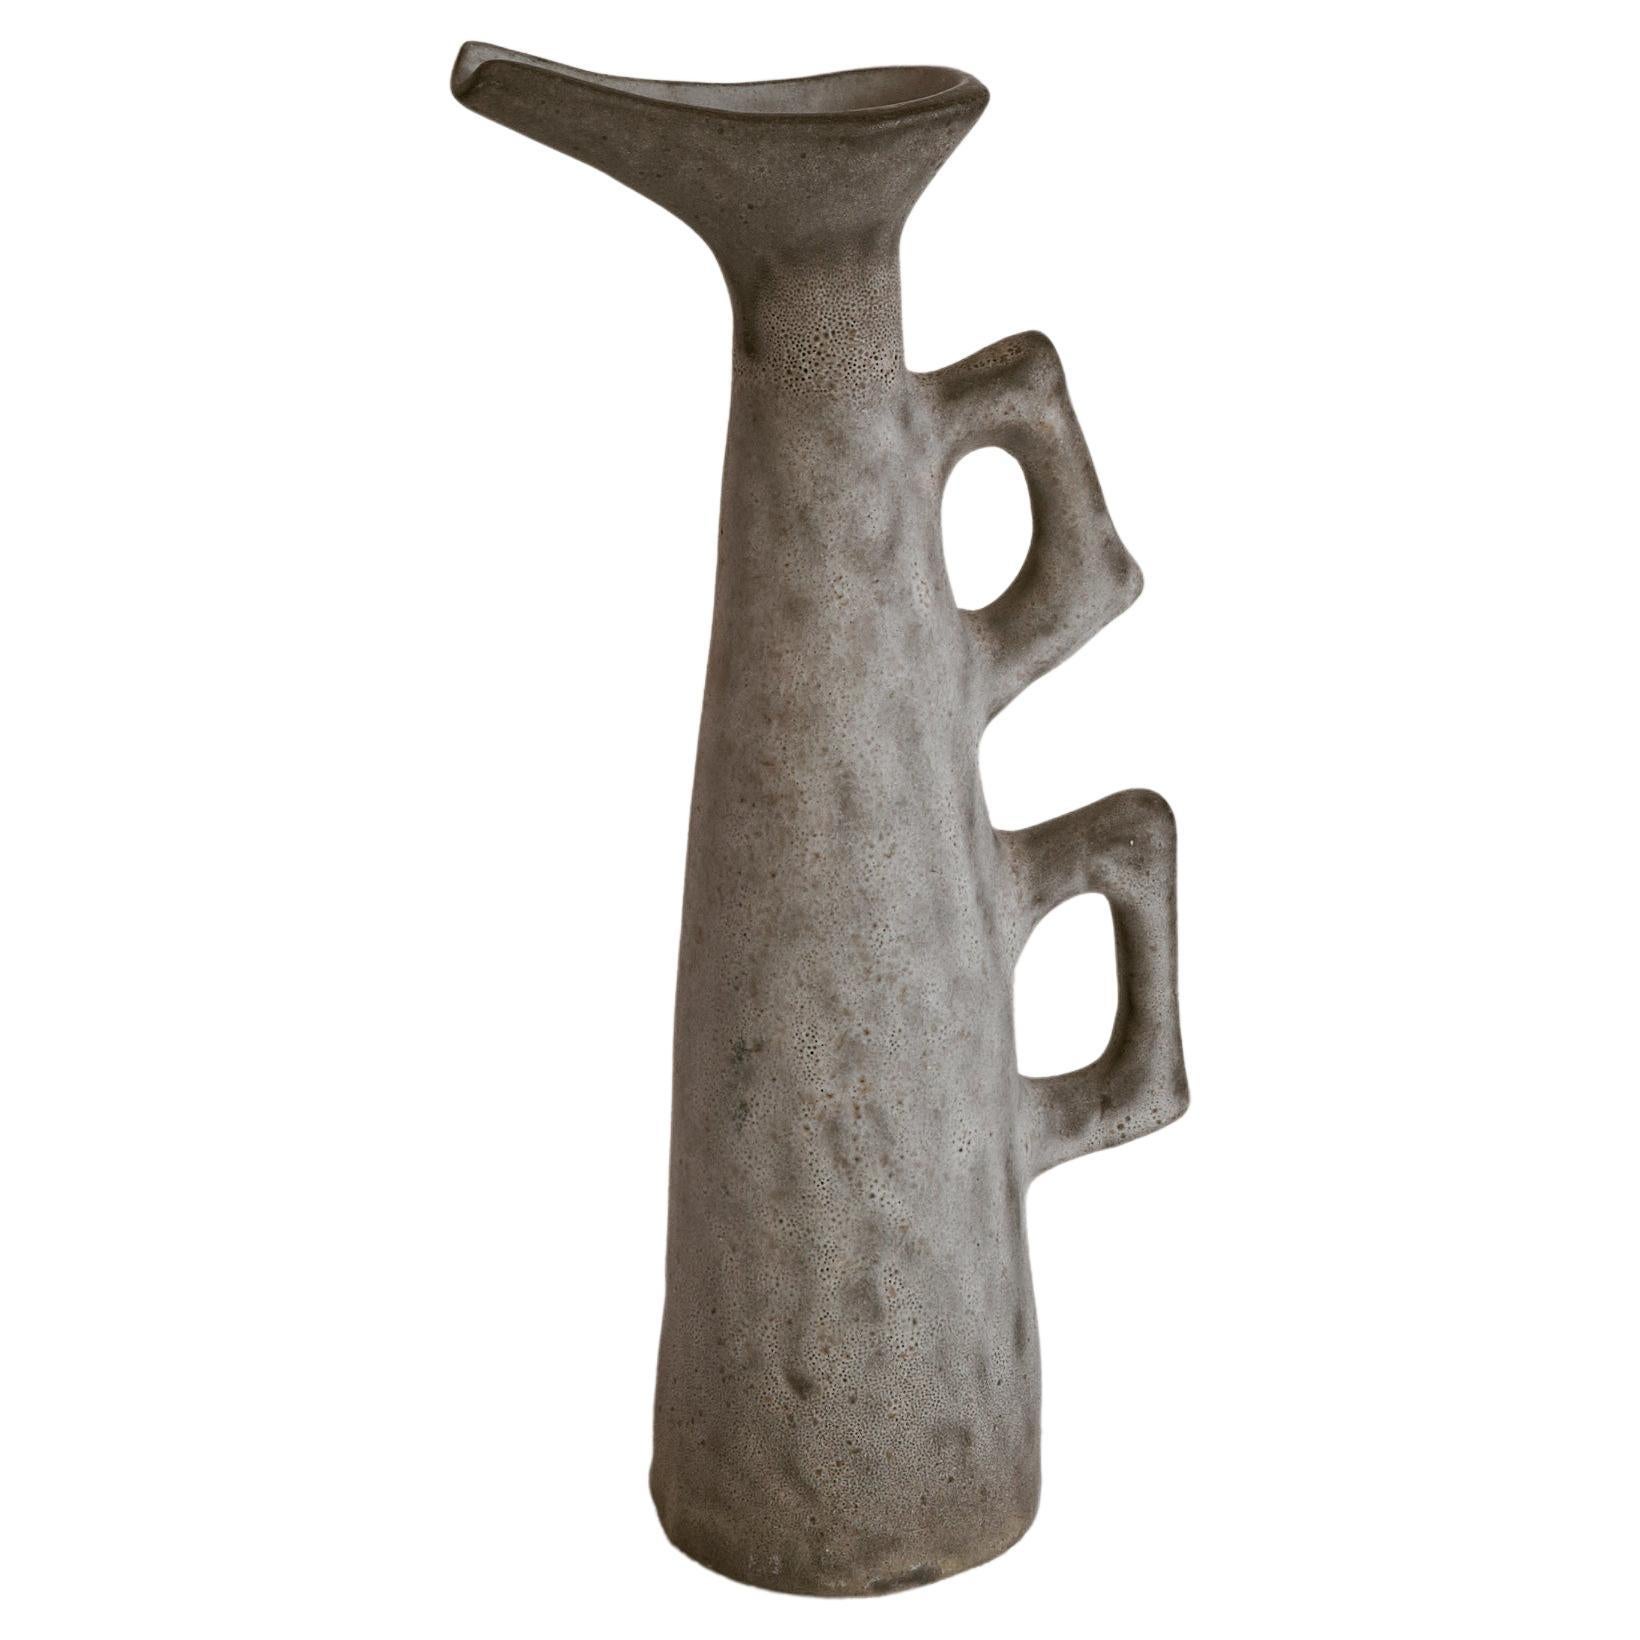 Jaap Ravelli Mid Century Studio Pottery Pitcher Vase